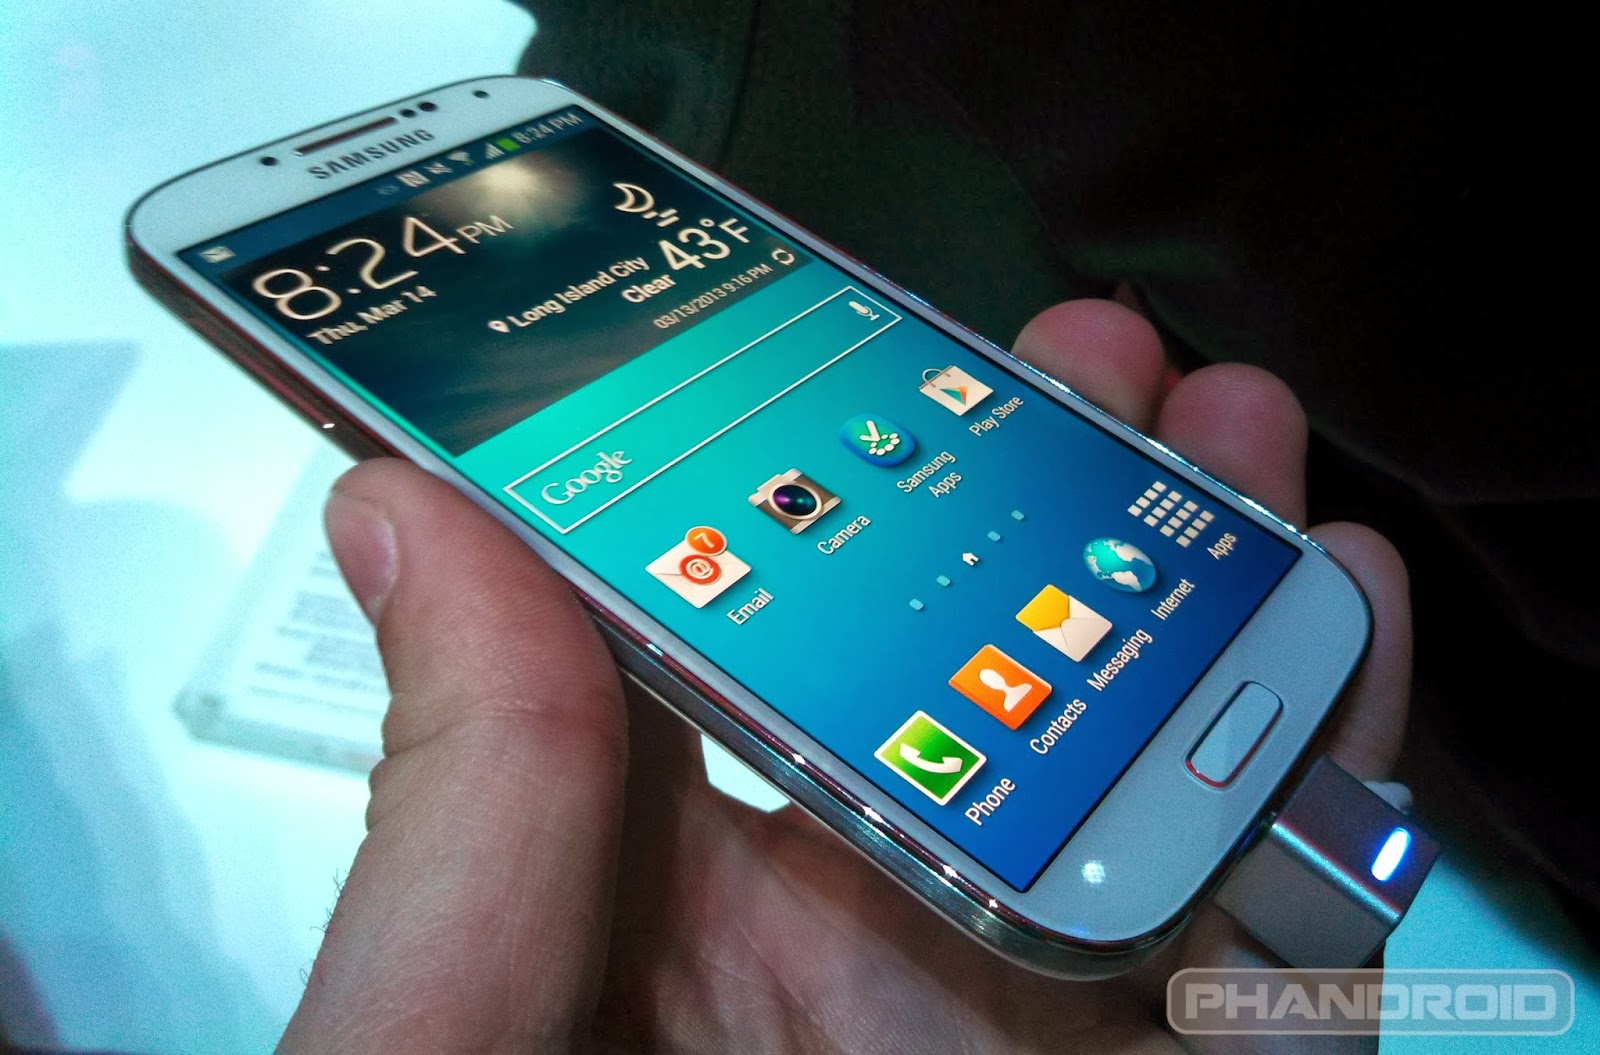 Update Harga: Harga Samsung Galaxy S4 I9500